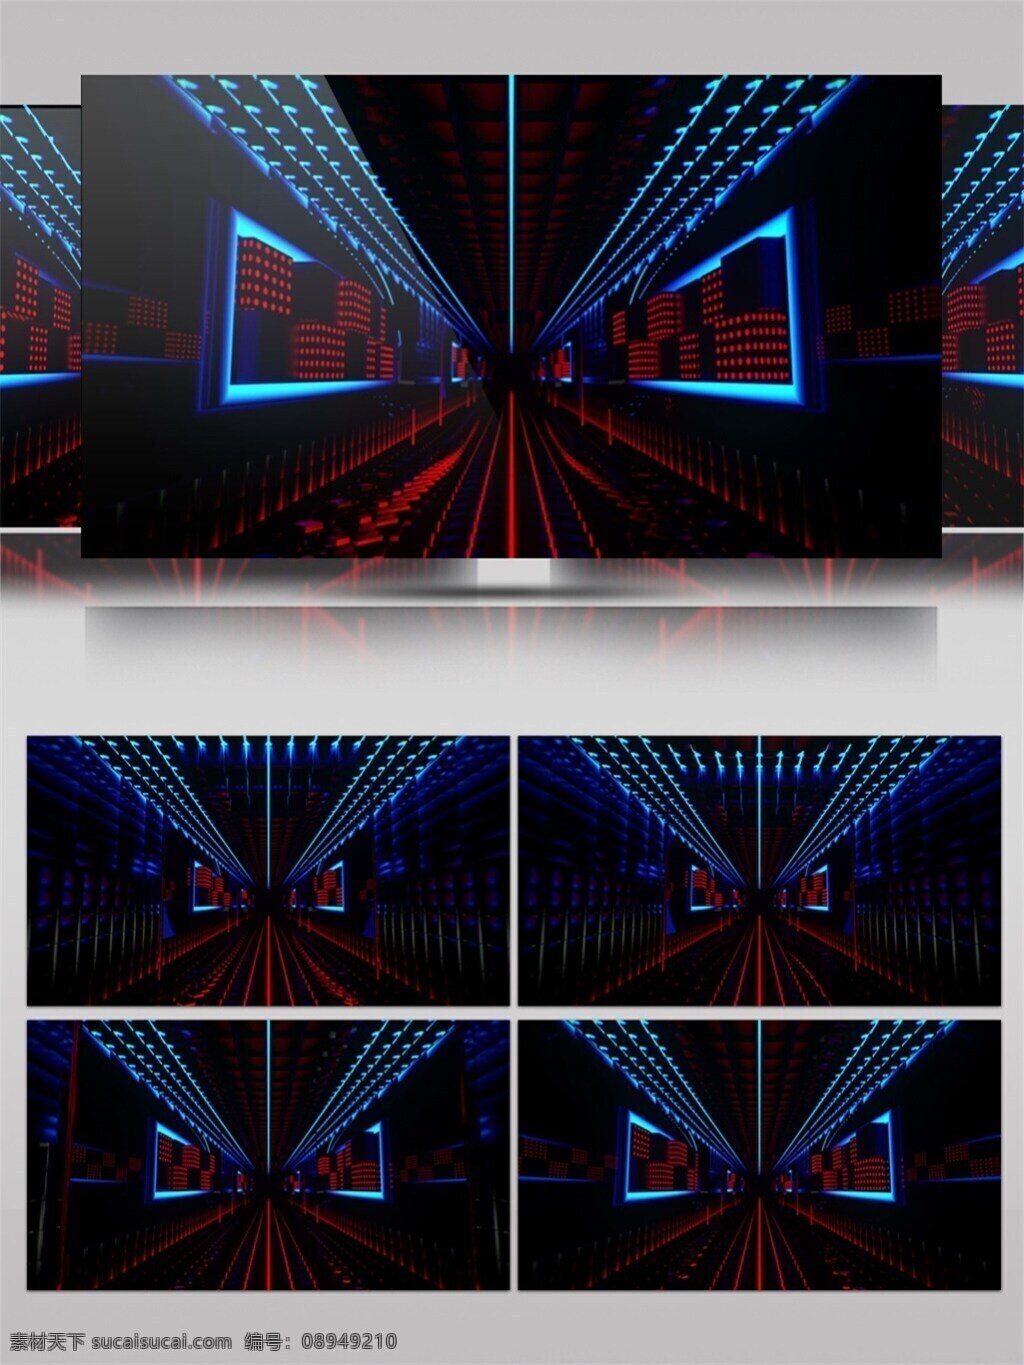 蓝色 led 光 高清 视频 3d视频素材 光闪闪 光丝绸 色彩融合 闪屏画面 特效视频素材